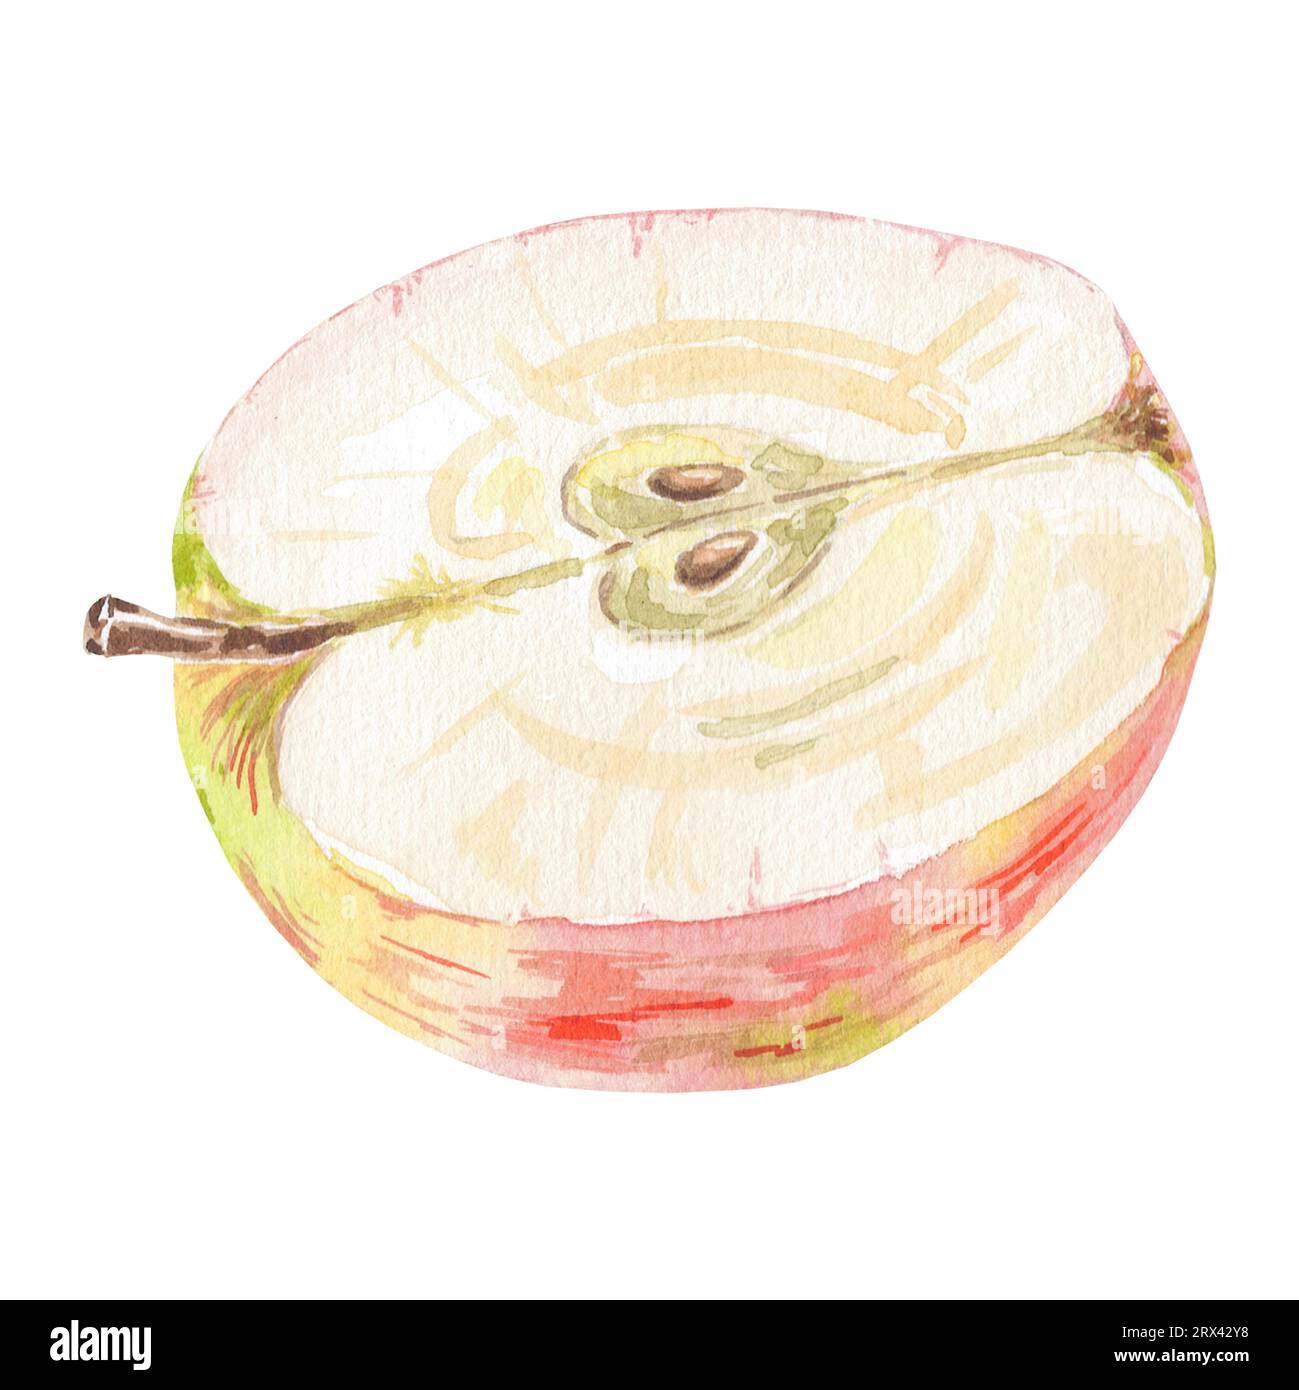 Aquarell rot halb ein Apfel isolierte Illustration auf weißem Hintergrund. Herbstfrucht für Logo, Menü, Poster, Muster. Kunst für Design. Gesunde Ernährung Stockfoto